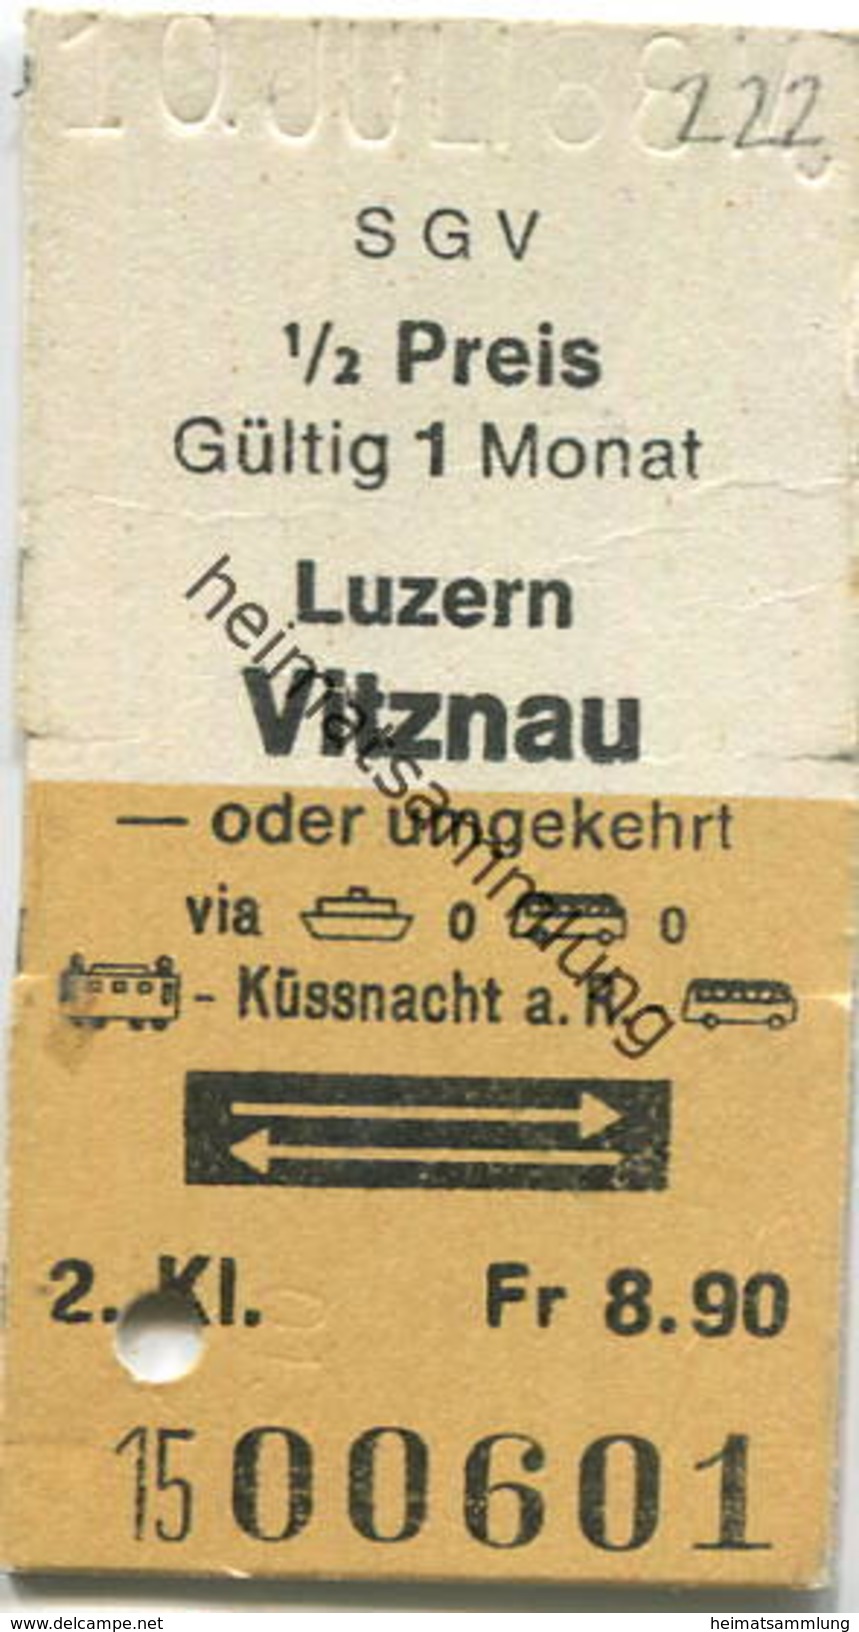 Schweiz - SGV Schifffahrtsgesellschaft Des Vierwaldstättersees - Luzern Vitznau Oder Umgekehrt - Fahrkarte 1988 - Europa